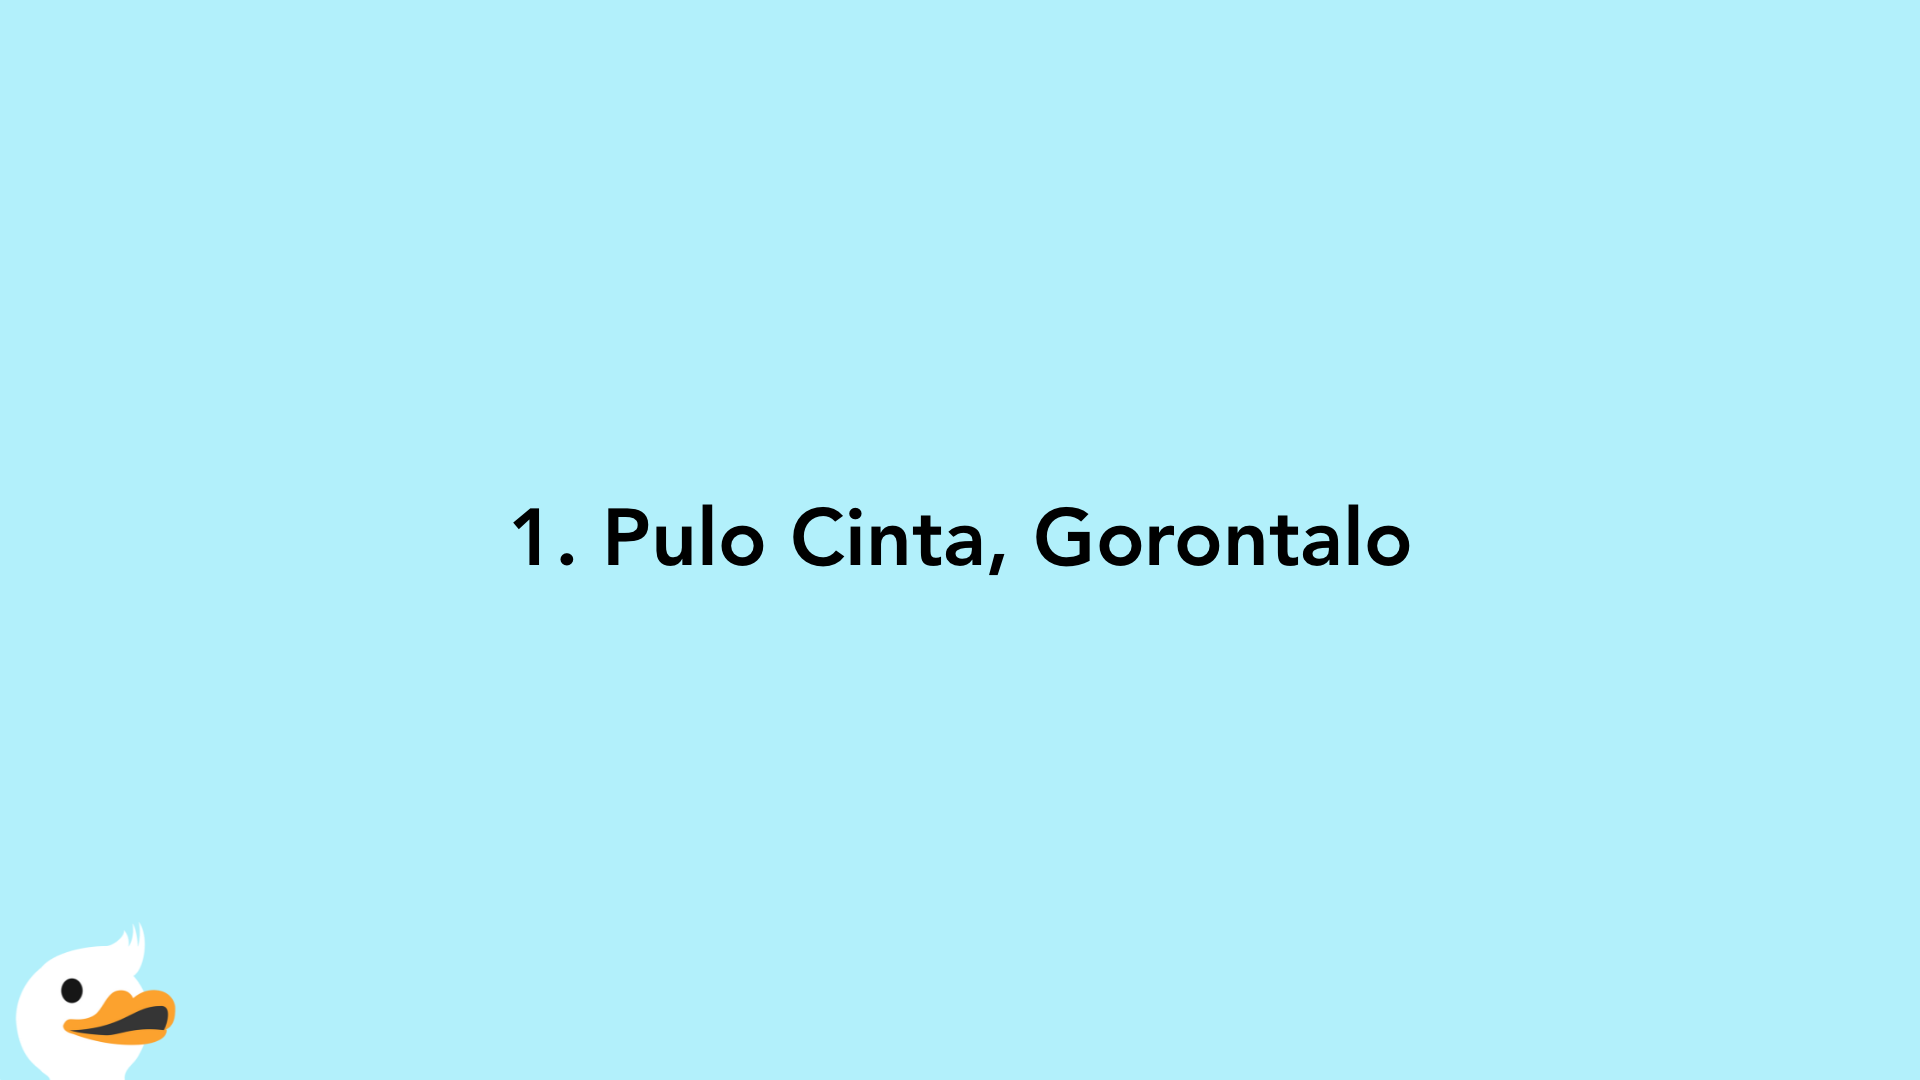 1. Pulo Cinta, Gorontalo